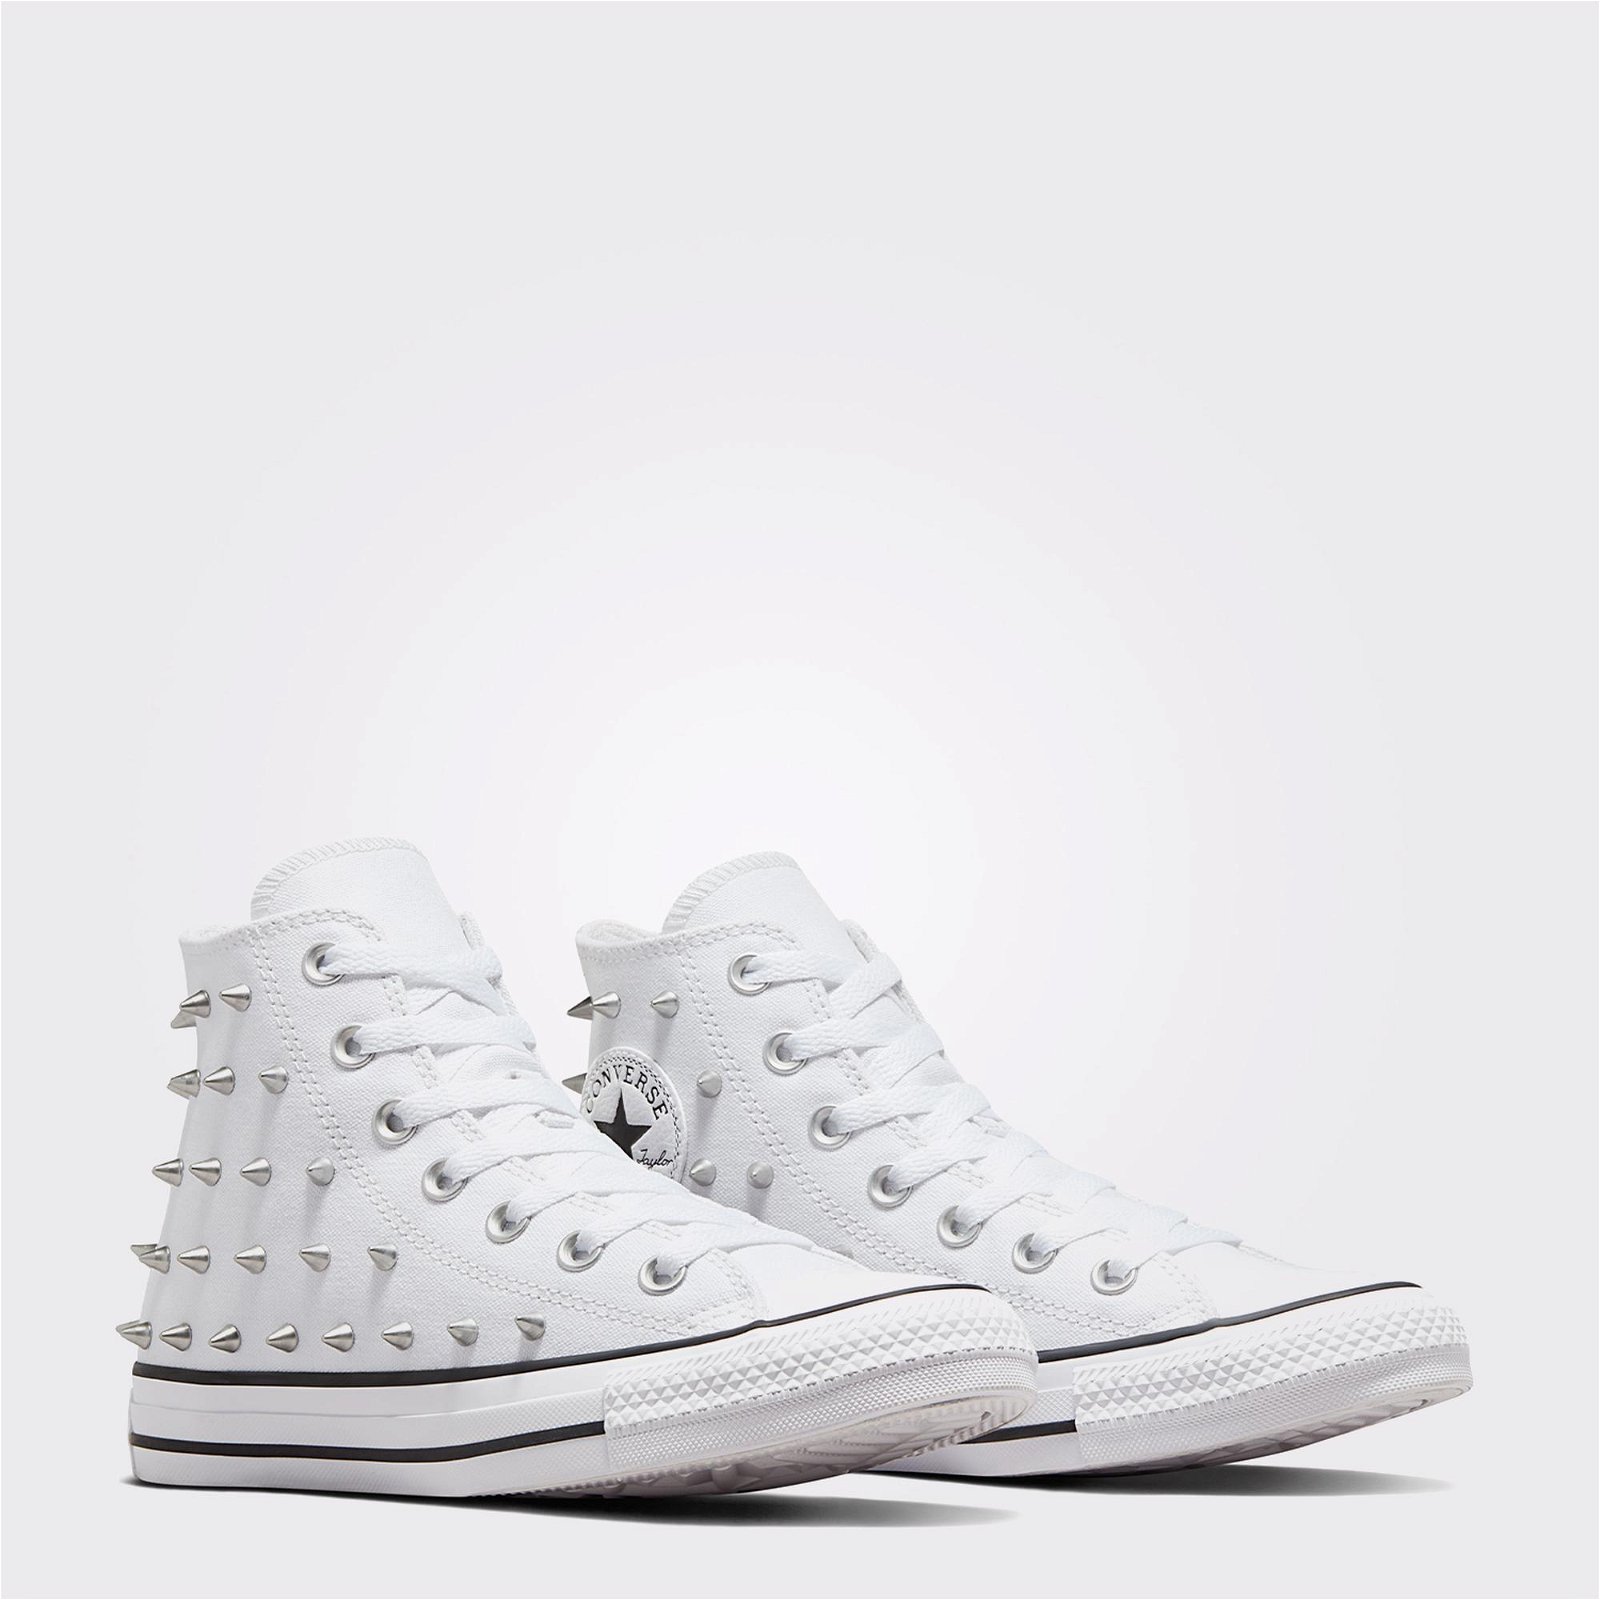 Converse Chuck Taylor All Star Studded Kadın Beyaz Sneaker